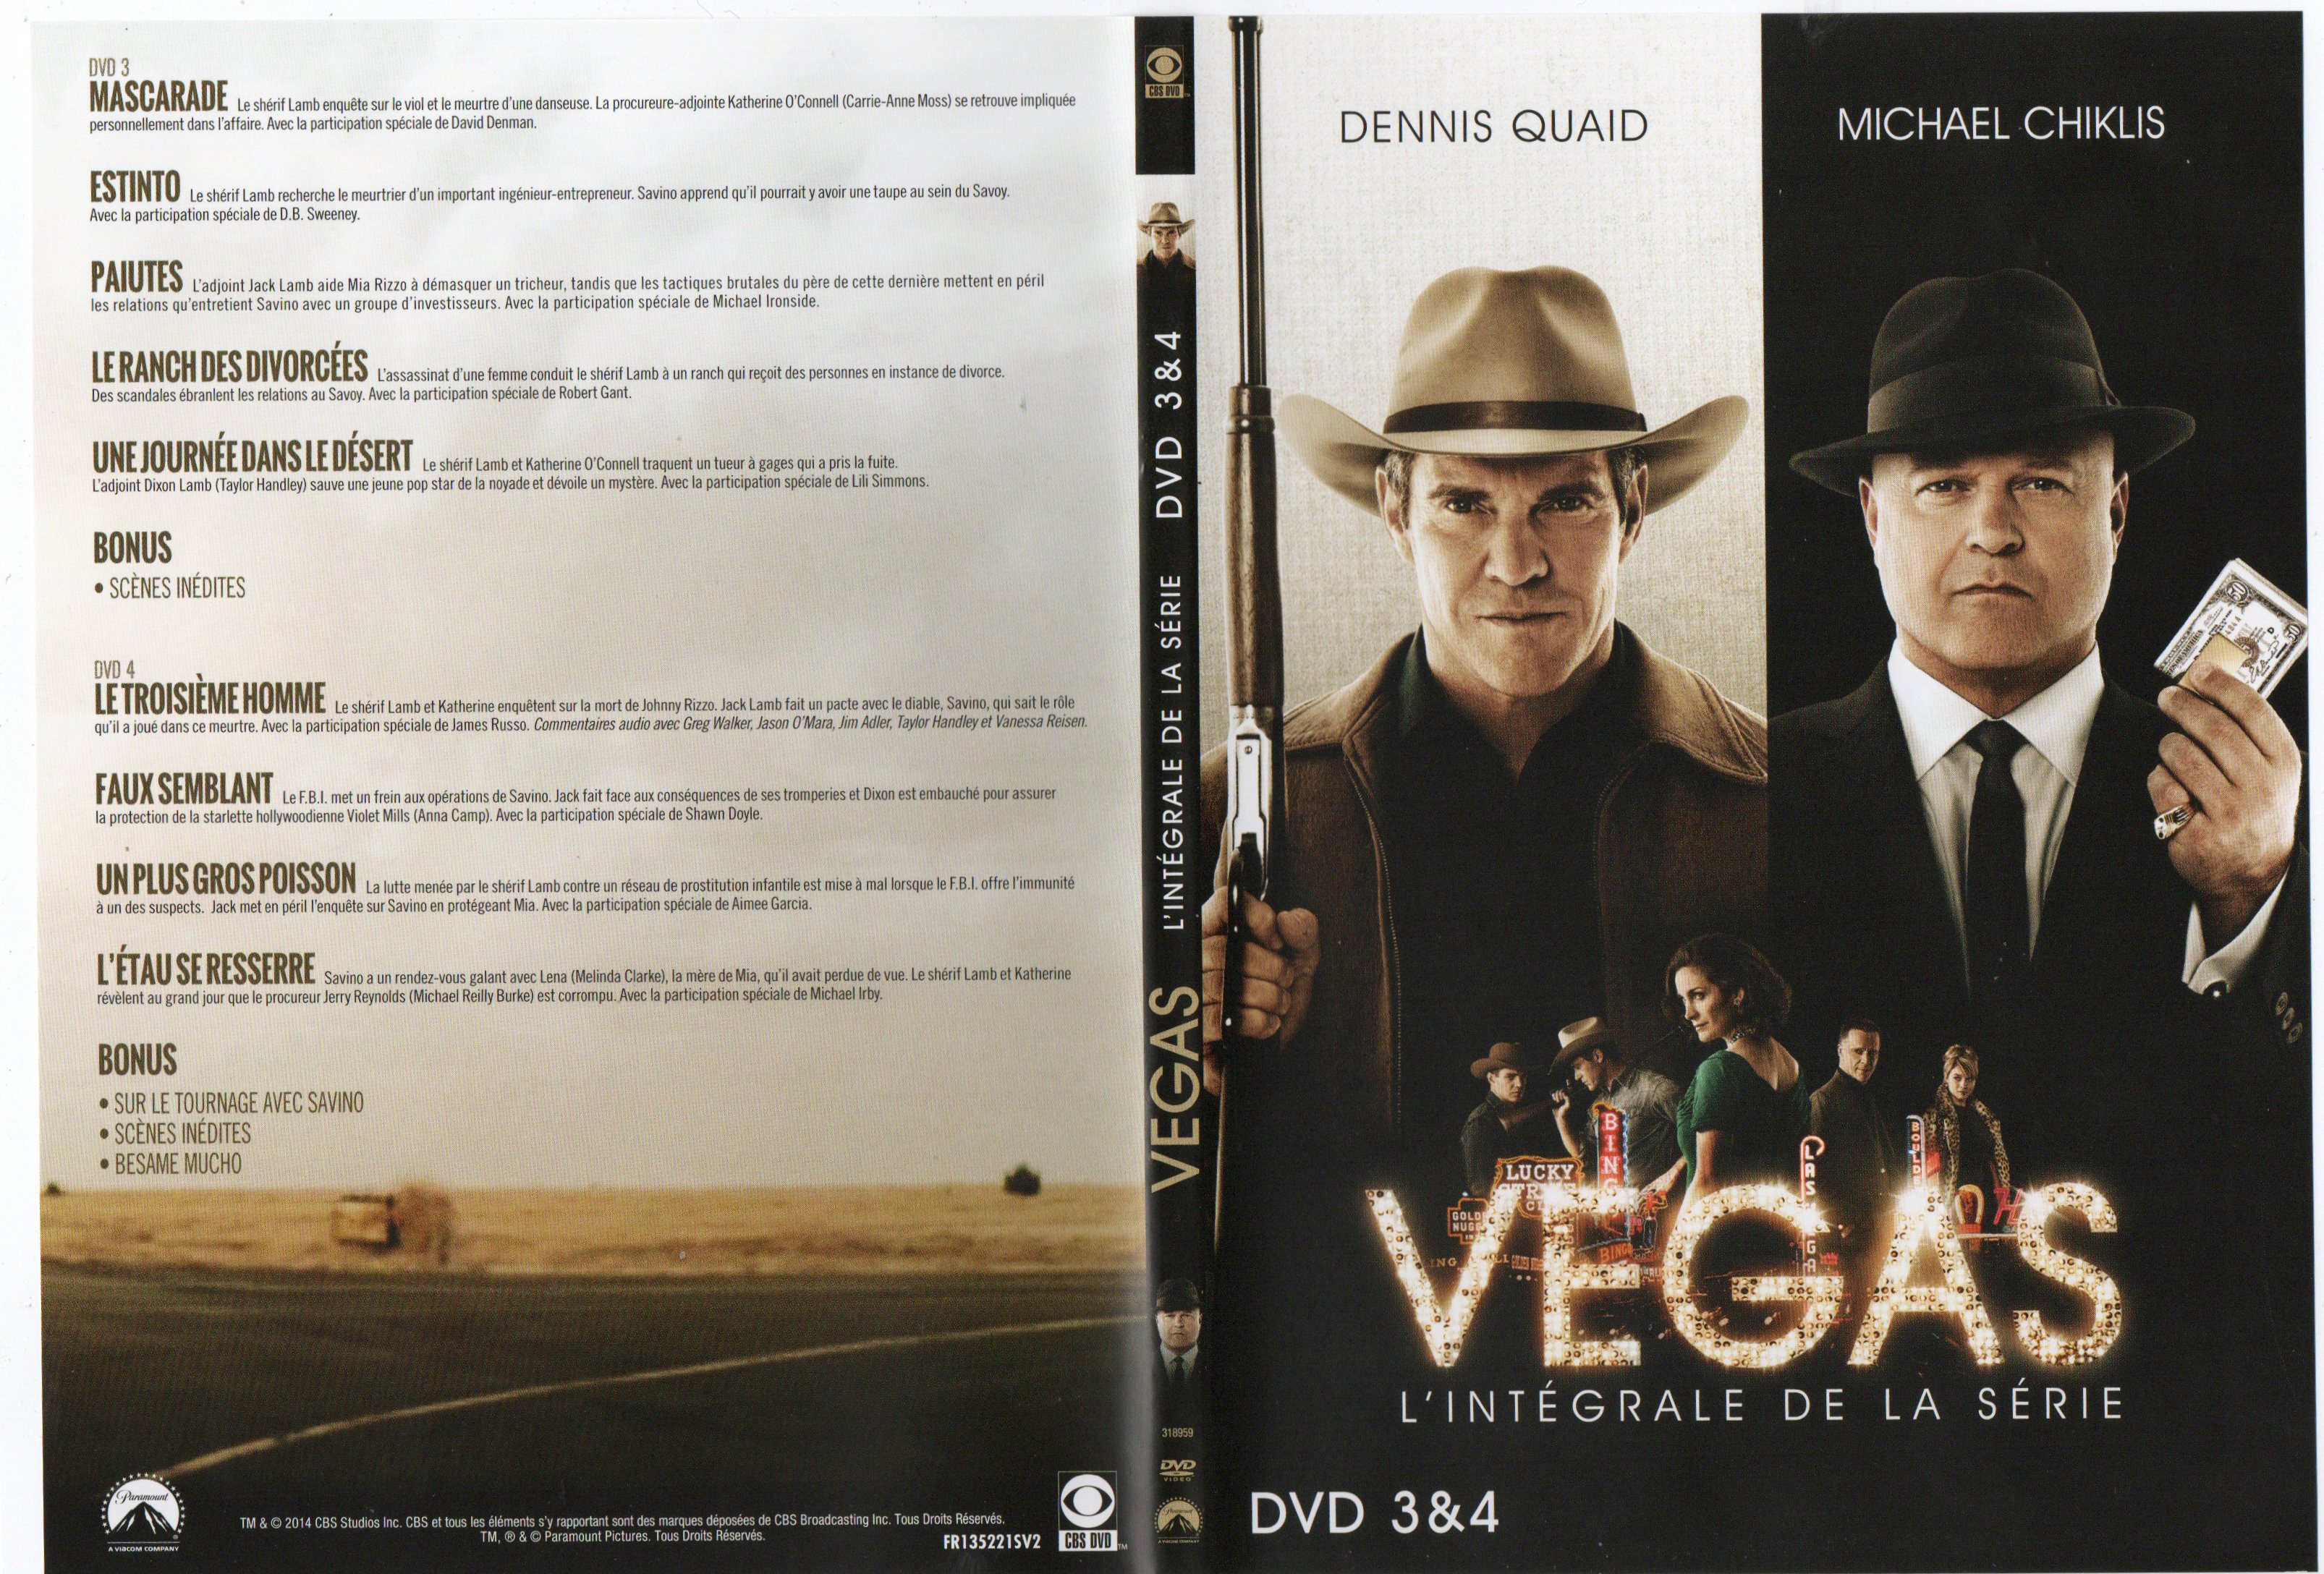 Jaquette DVD Vegas DVD 2